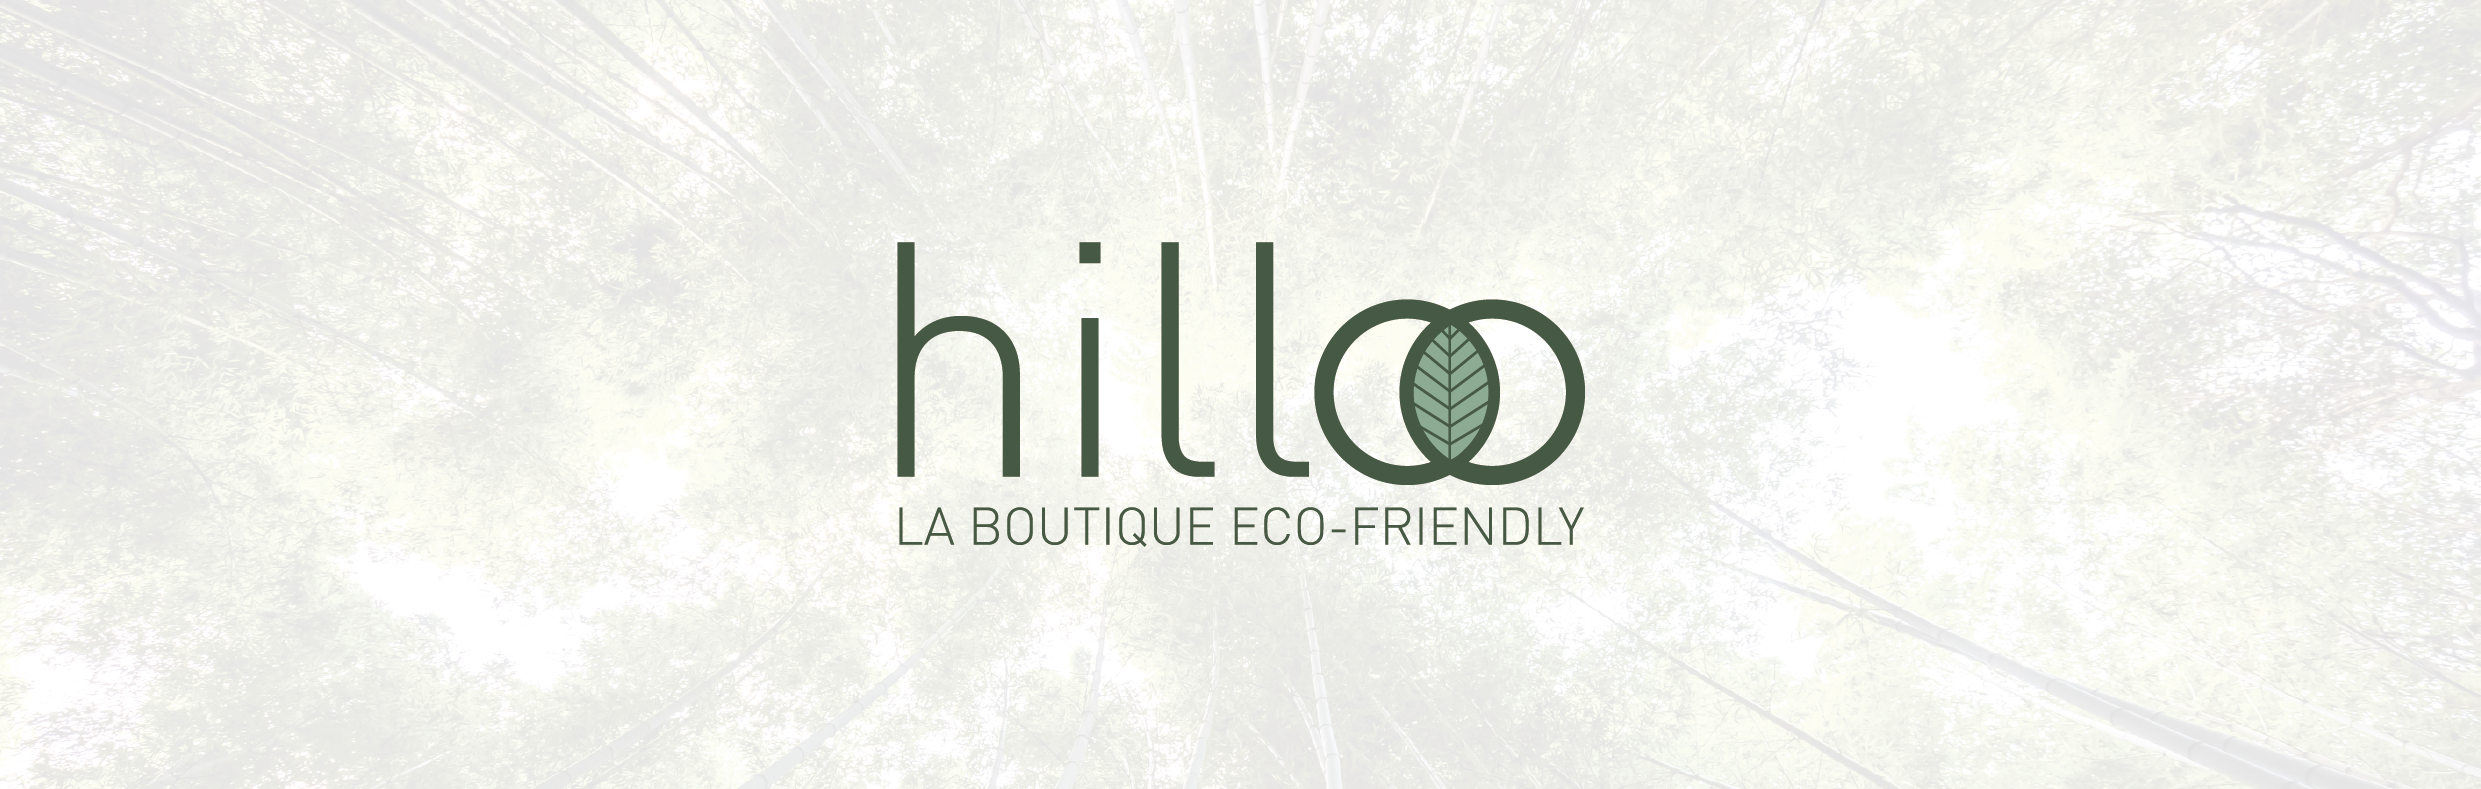 presentation boutique en ligne eco responsable logo Hilloo communication publicite